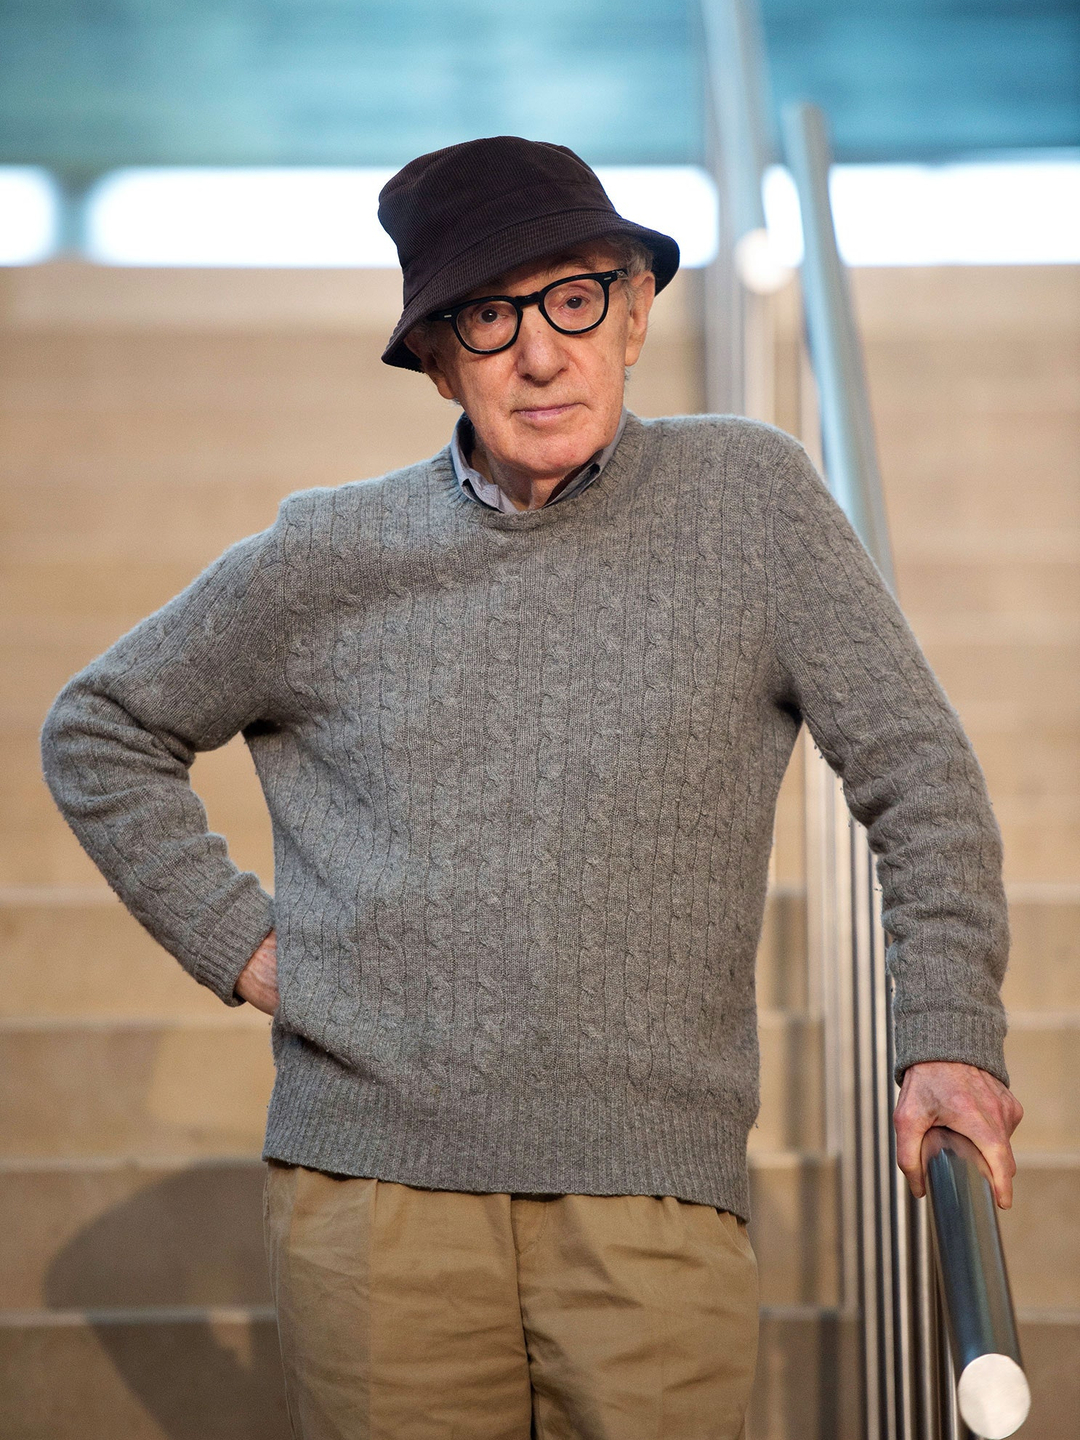 Woody Allen life path